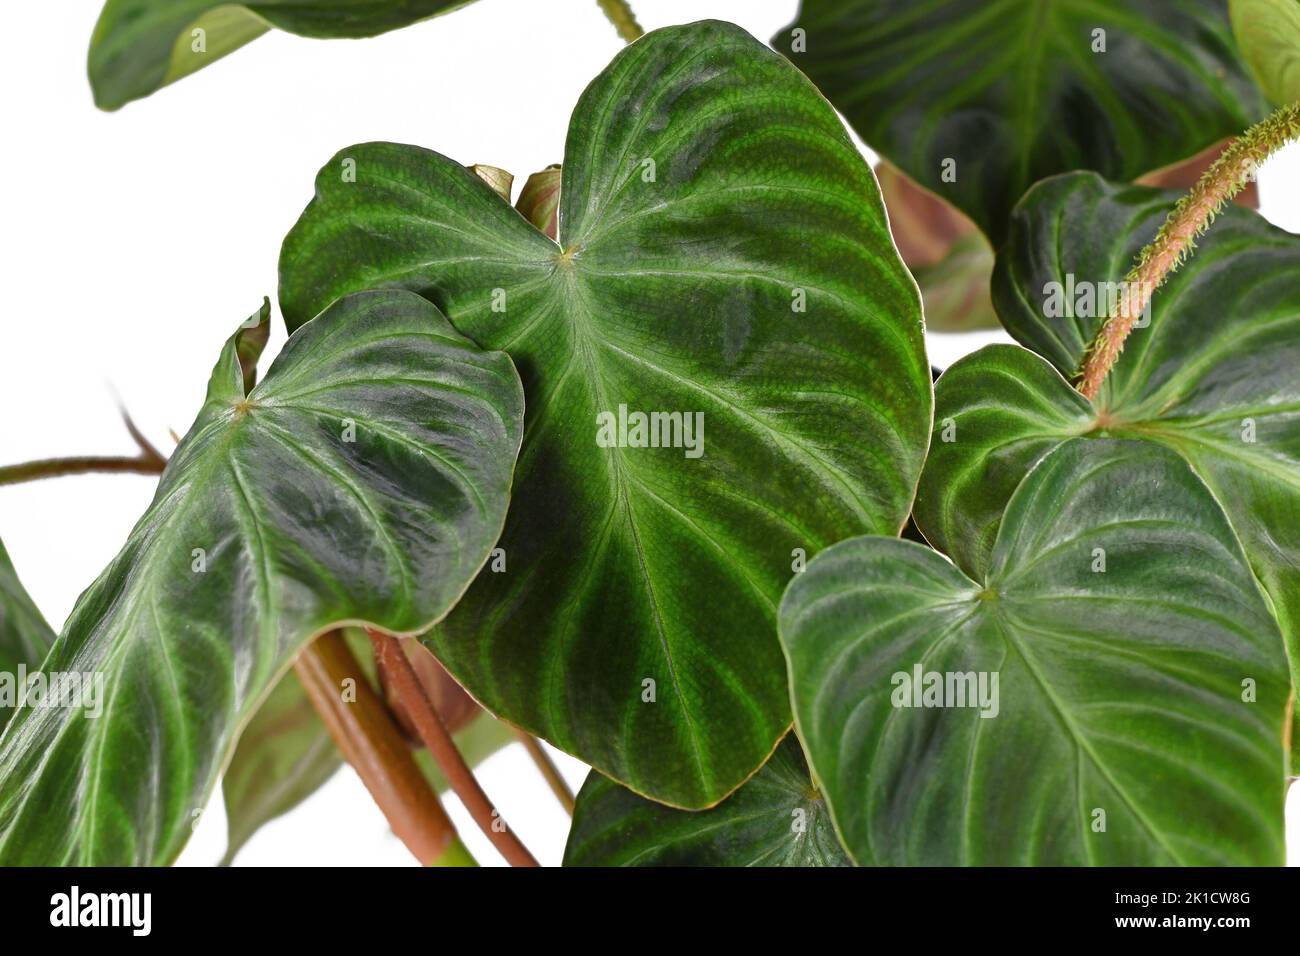 Foglia di velluto di pianta tropicale 'Philodendron verrucosum' su sfondo bianco Foto Stock